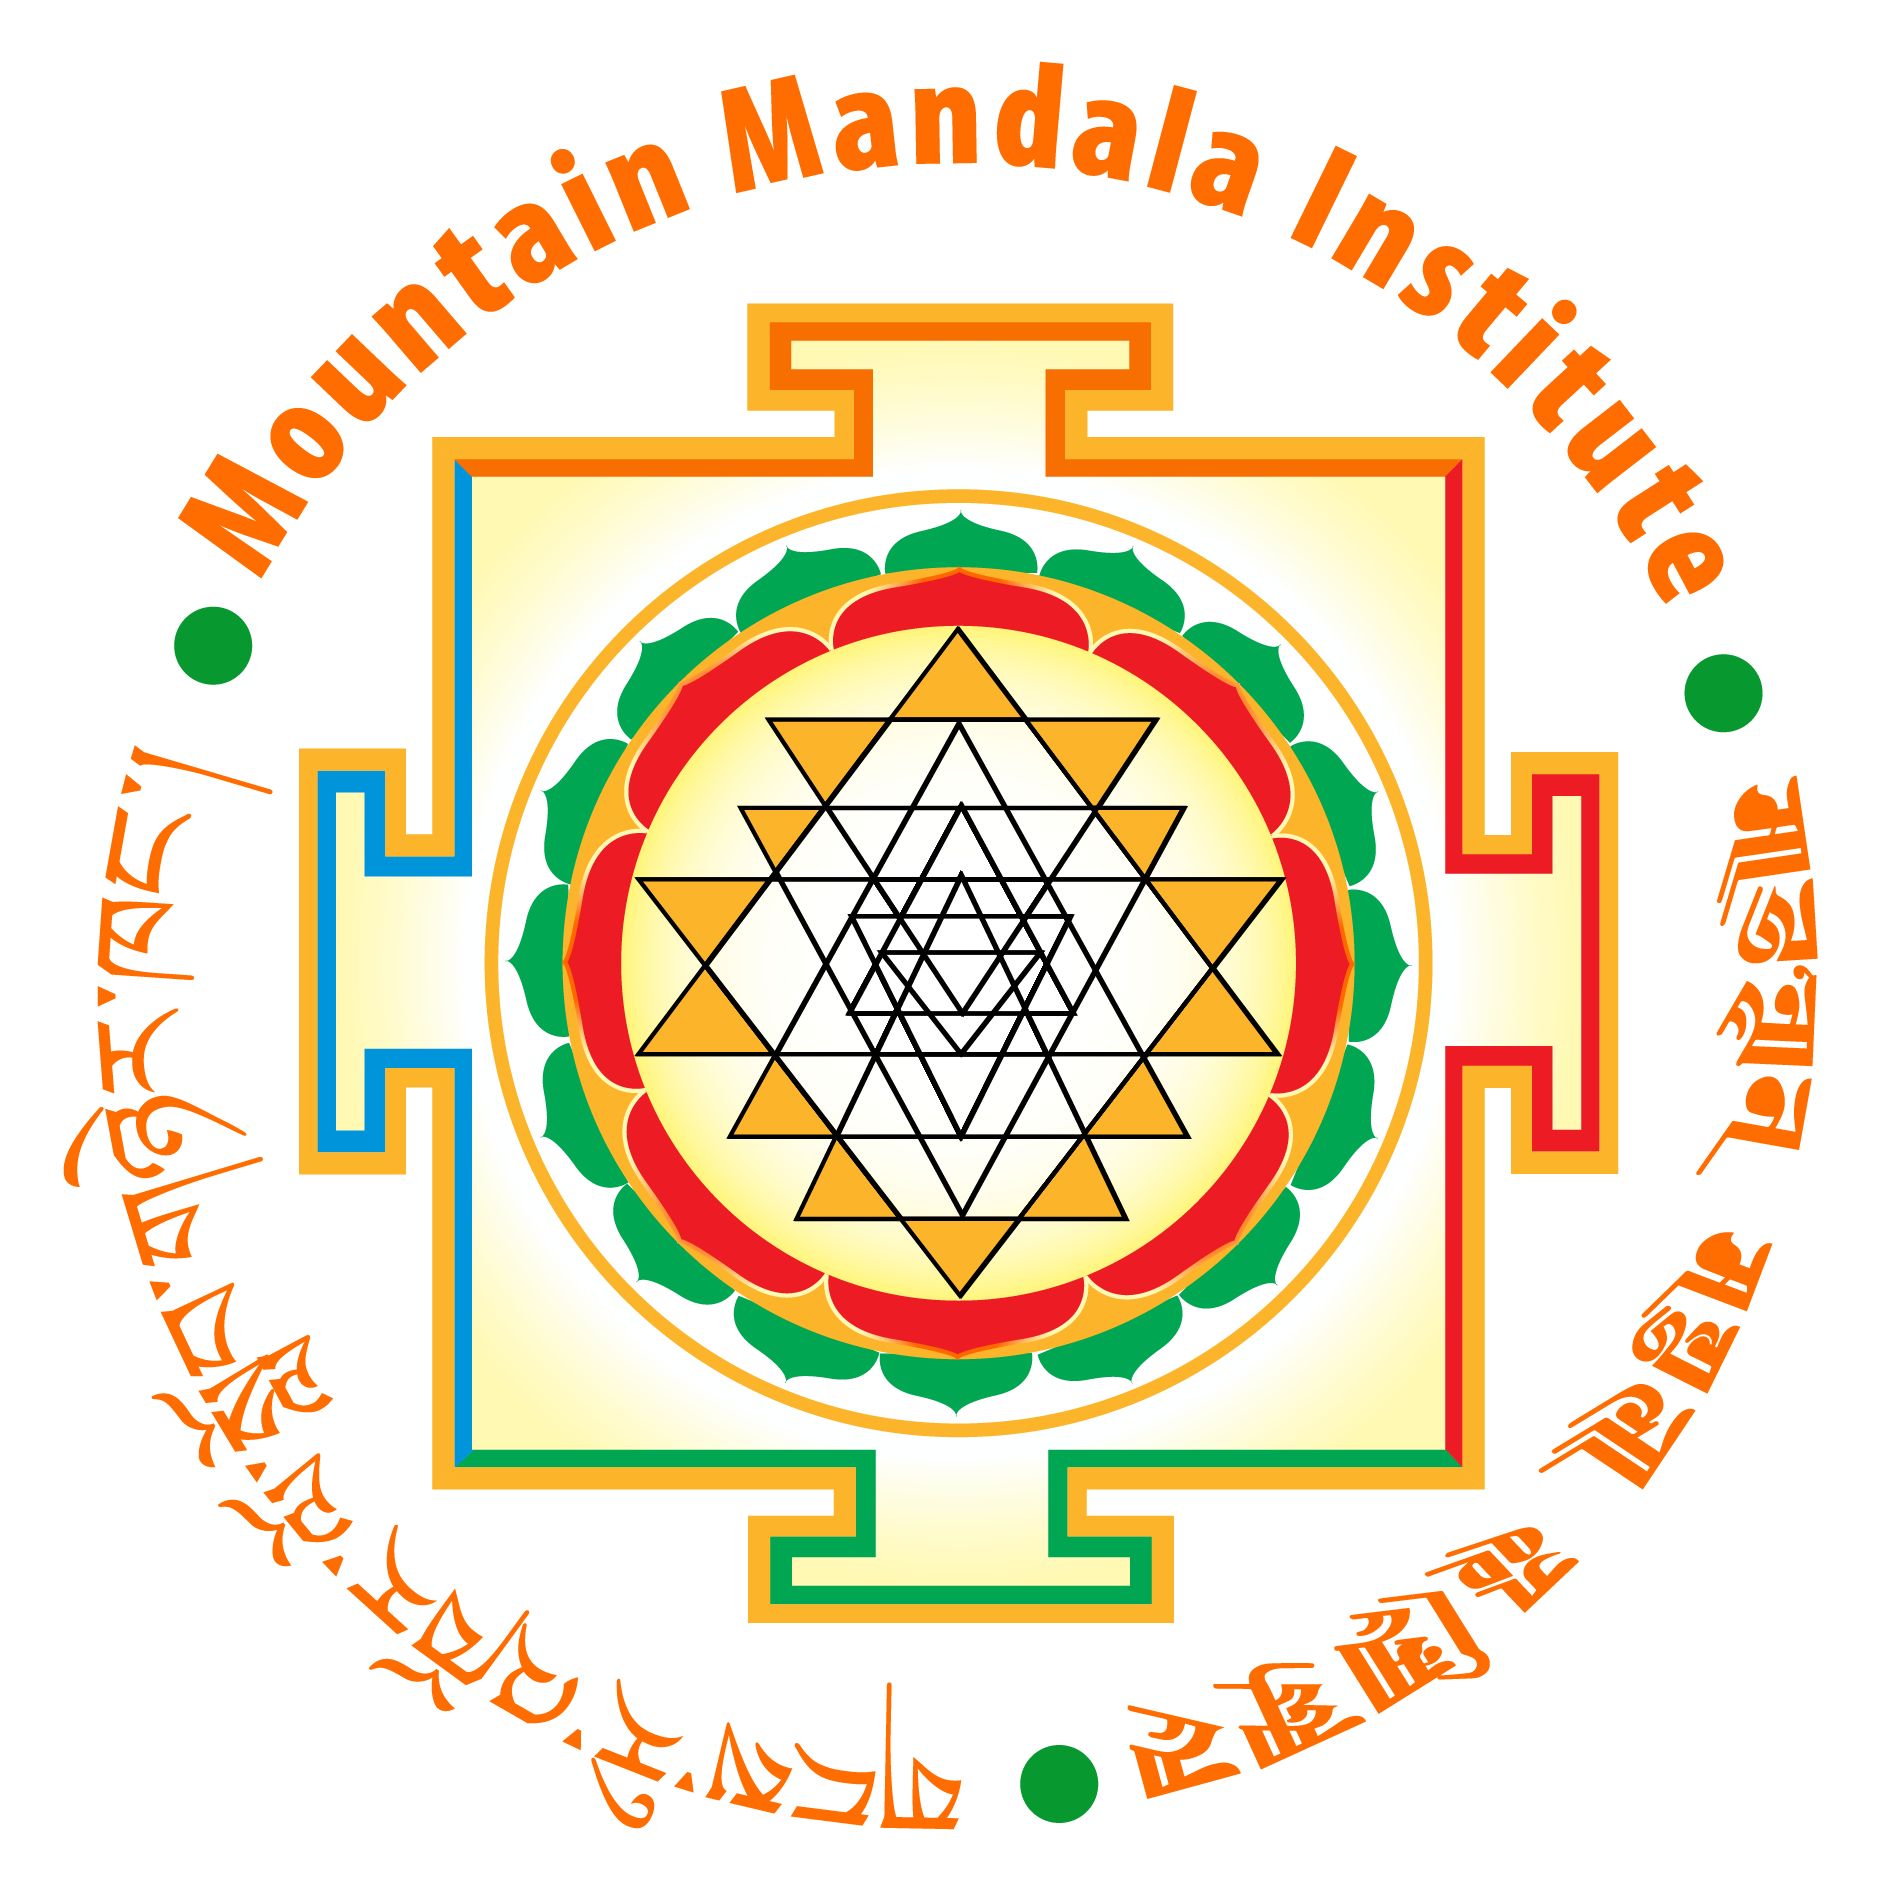 Mountain Mandala